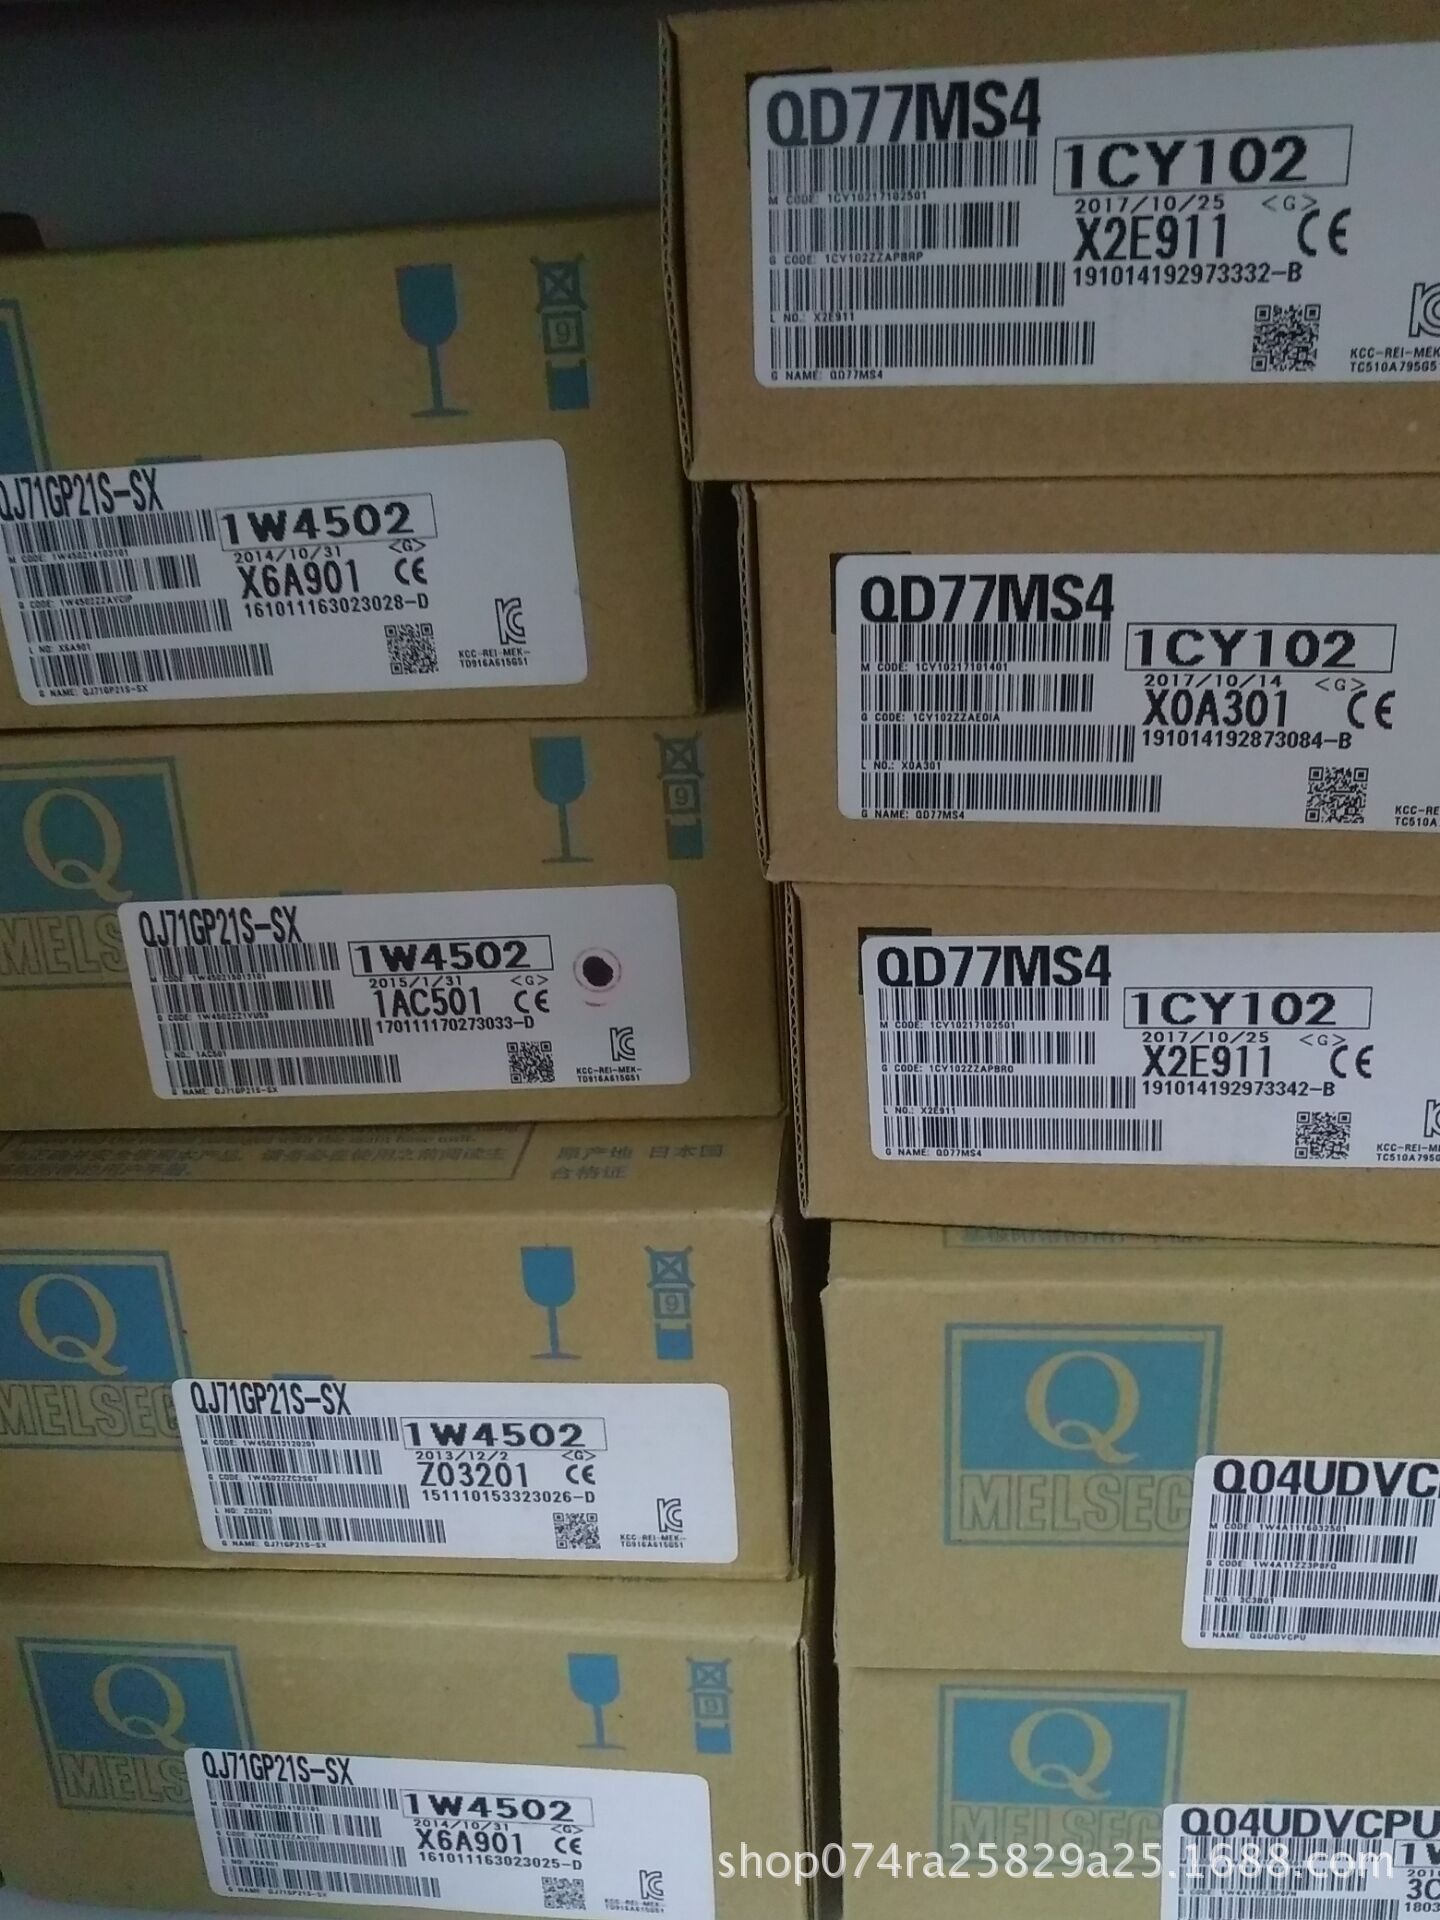 QD77MS4 三菱模块 伺服电机 变频器 PLC 安川伺服电机 发那科数控